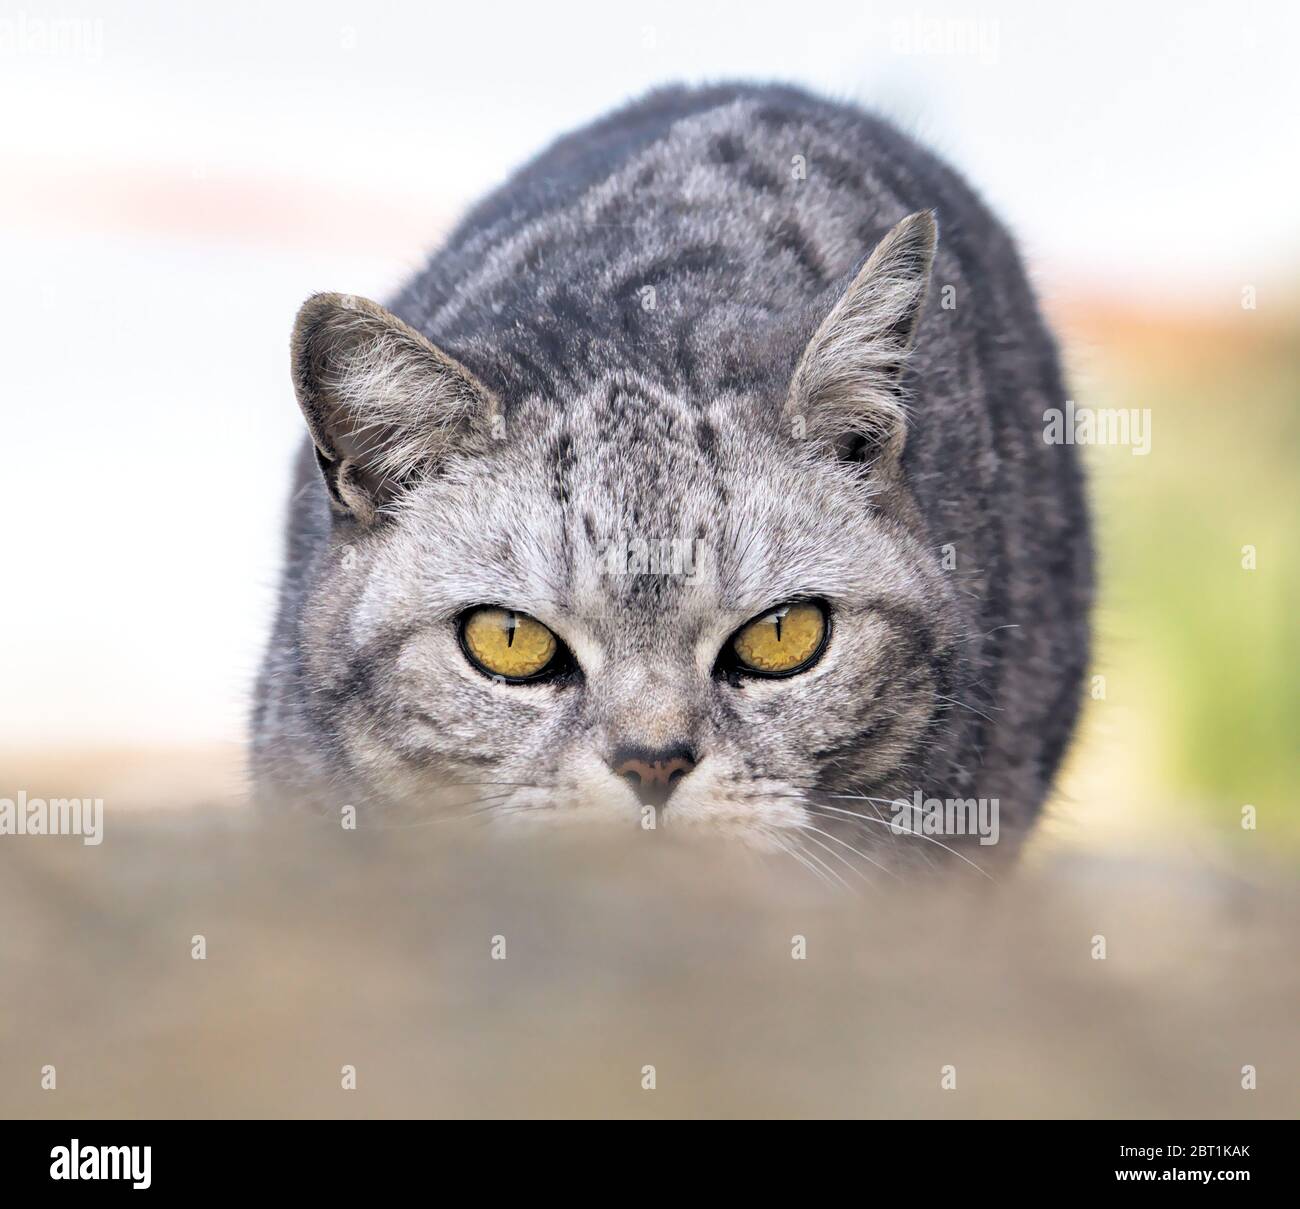 Fronte sul colpo di un gatto grigio Tabby con occhi gialli Stalking Prey accovacciato basso a terra Foto Stock